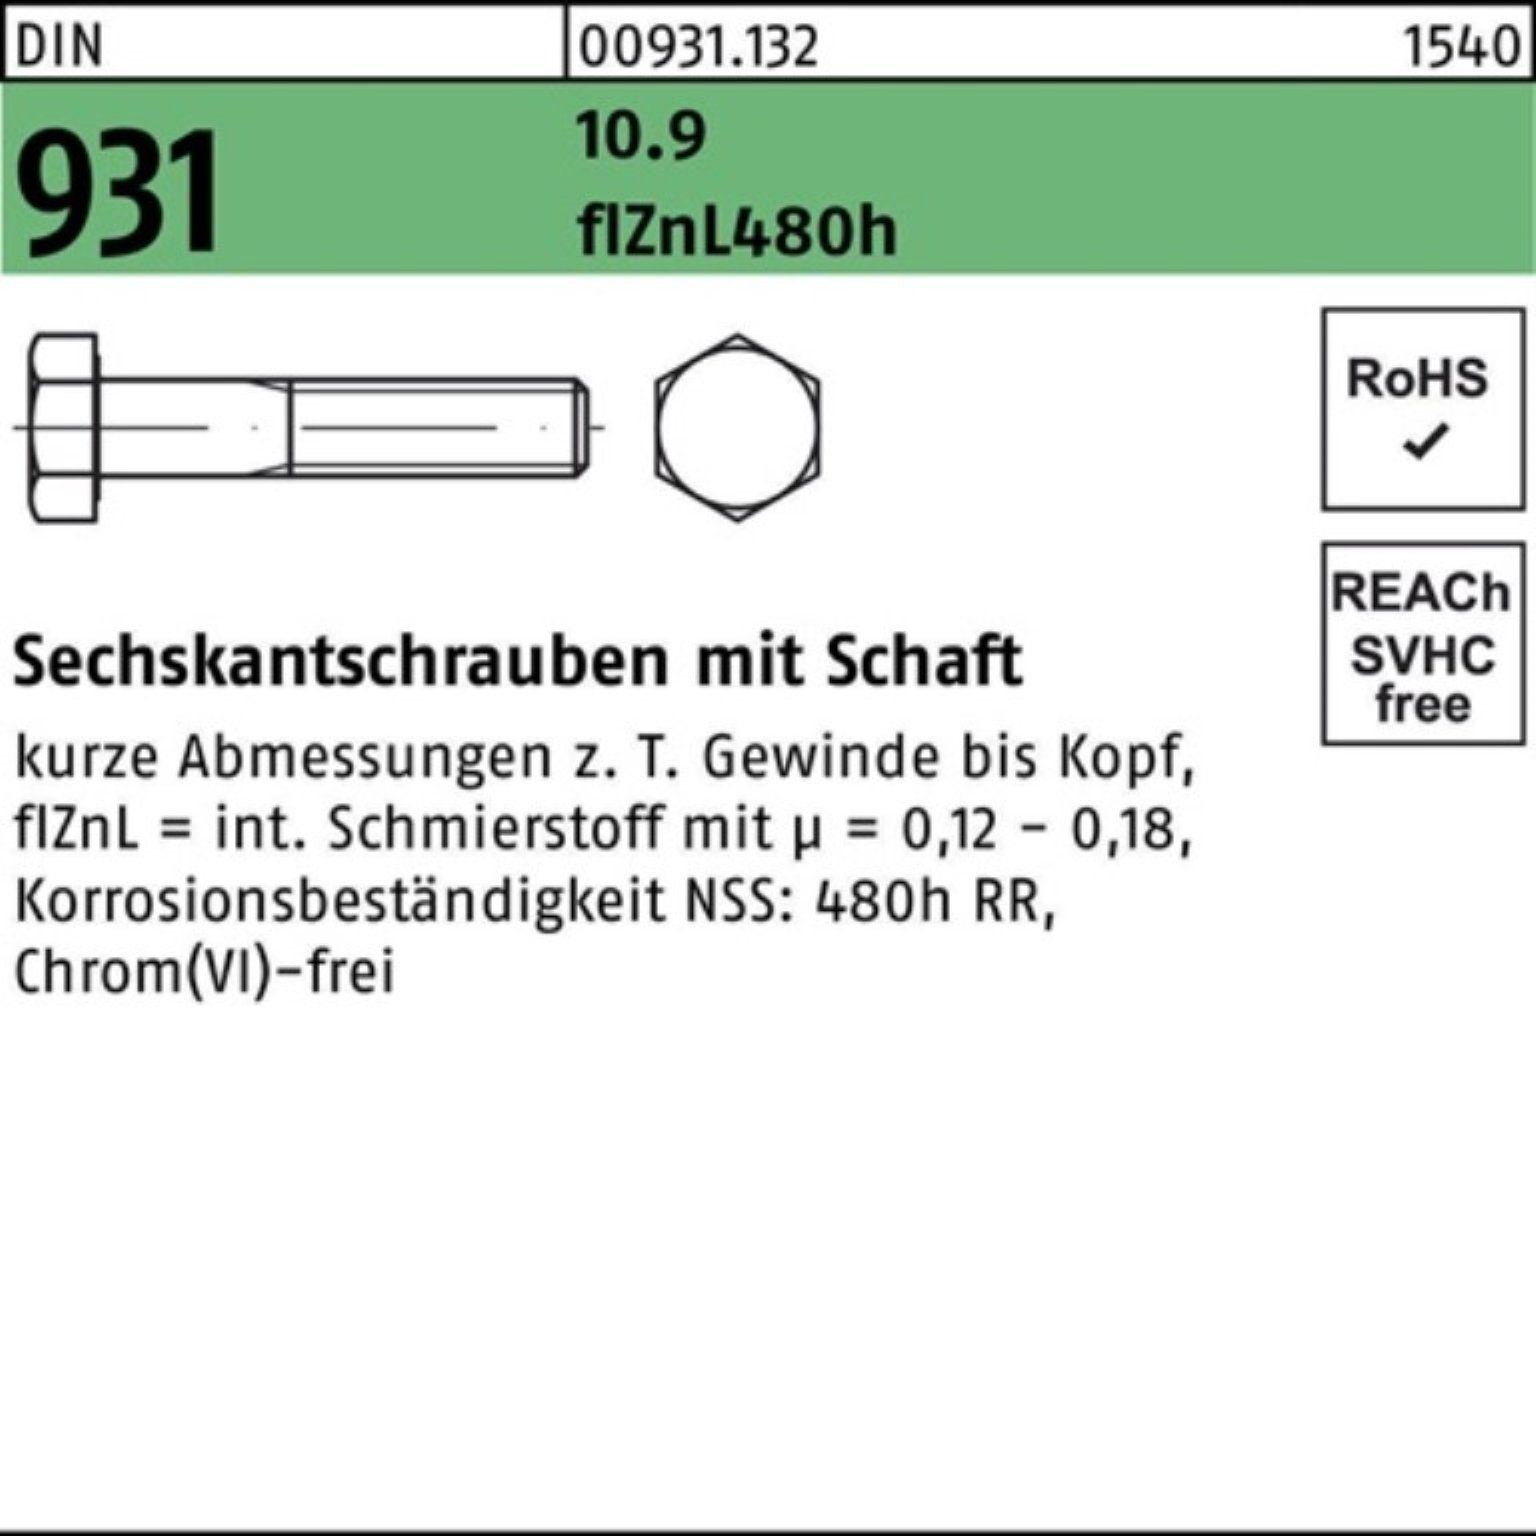 Reyher Sechskantschraube 10.9 M6x Pack 931 200er DIN Schaft Sechskantschraube flZnL/nc/x/x/4 50